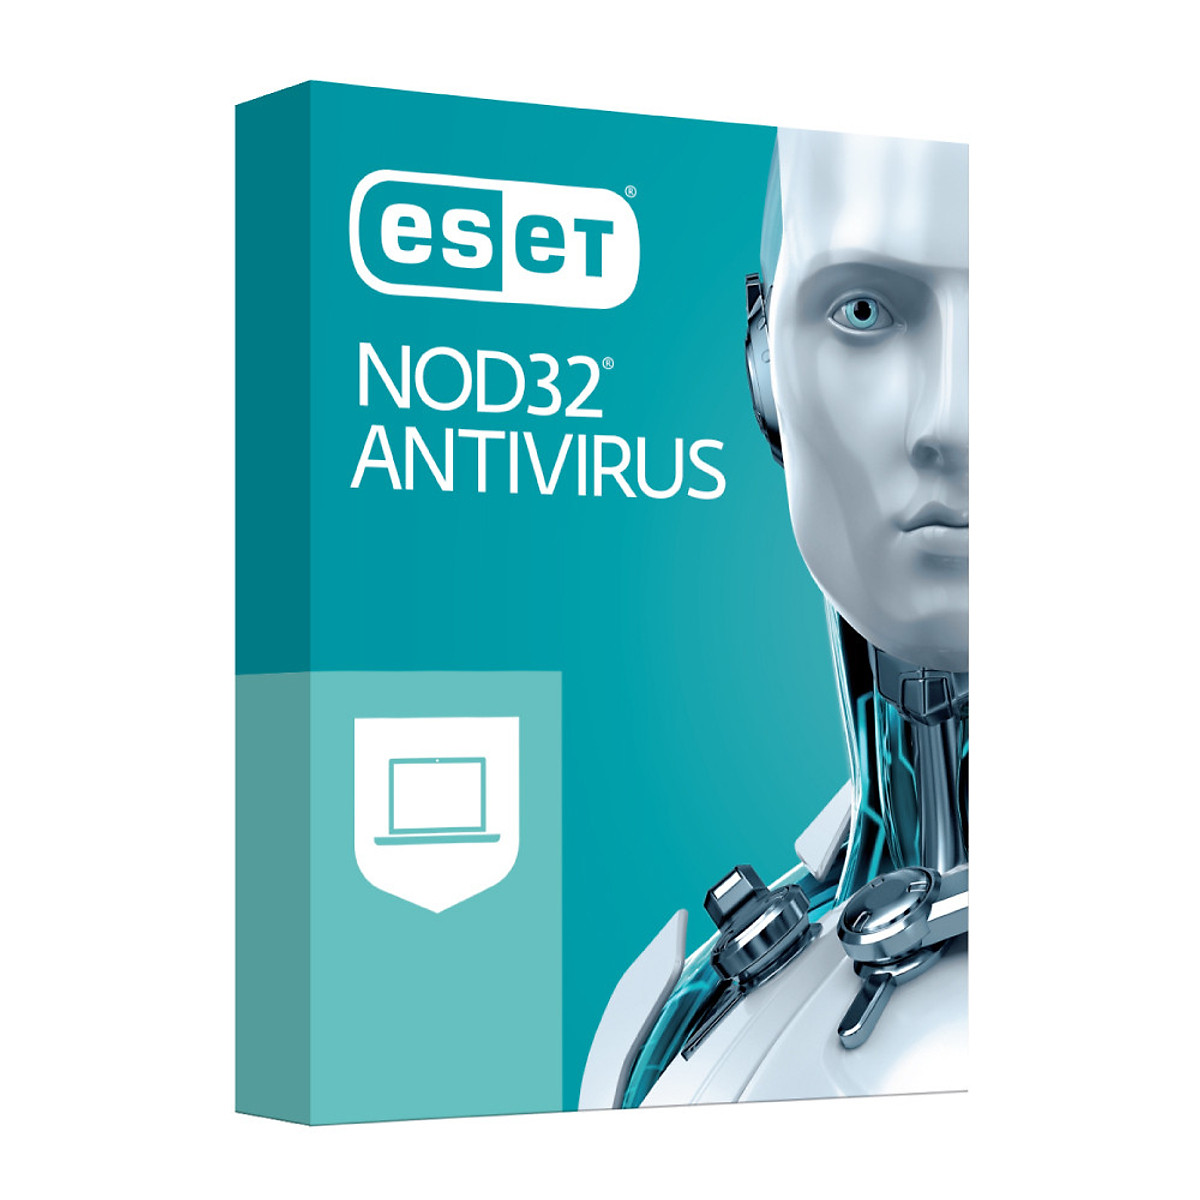 Phần mềm diệt Virus Eset Nod32 Antivirus 1 User 1 Year - Bản quyền 1 Máy/1 Năm - Hàng Chính Hãng